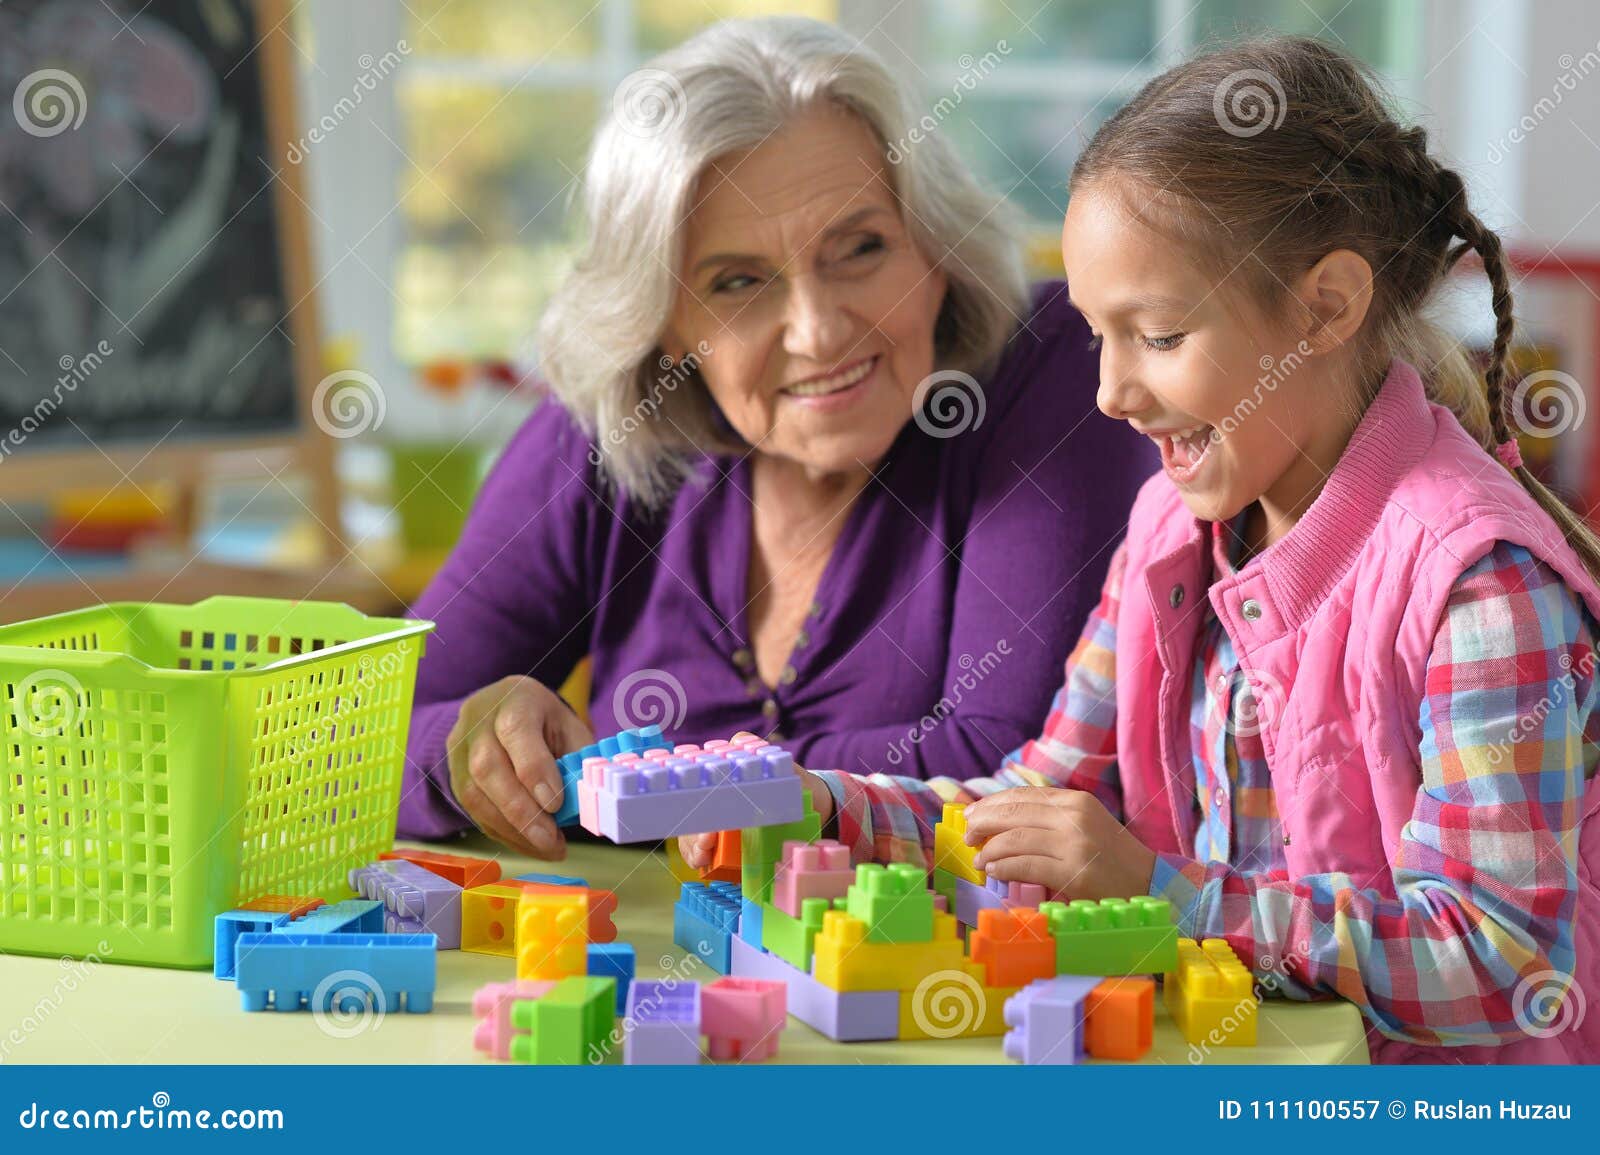 Можно бабушке играть. Как можно поиграть с бабушкой. Во что можно поиграть дома с бабушкой и внучкой. Какие настольные игры можно поиграть с бабушкой и внучкой.